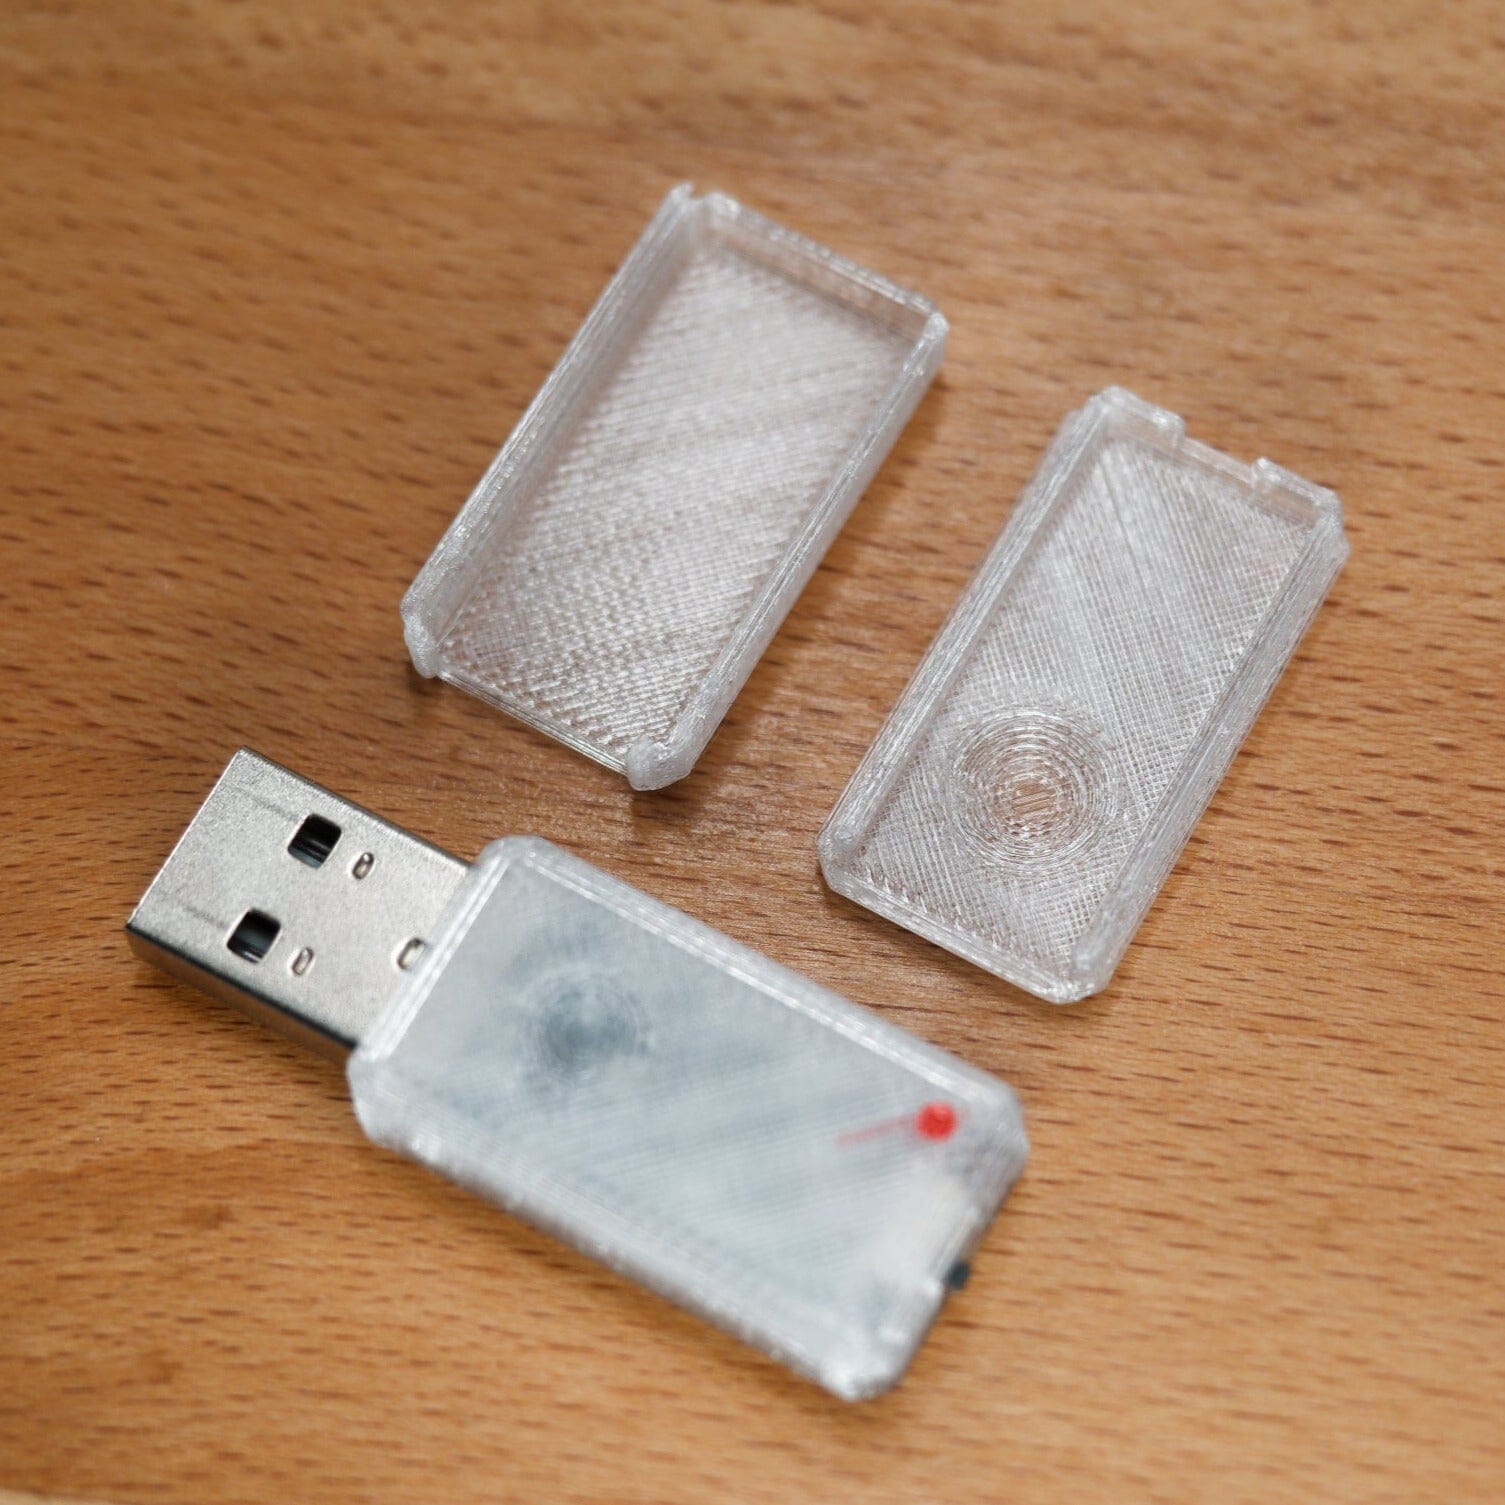 USB Nova with transparent Case